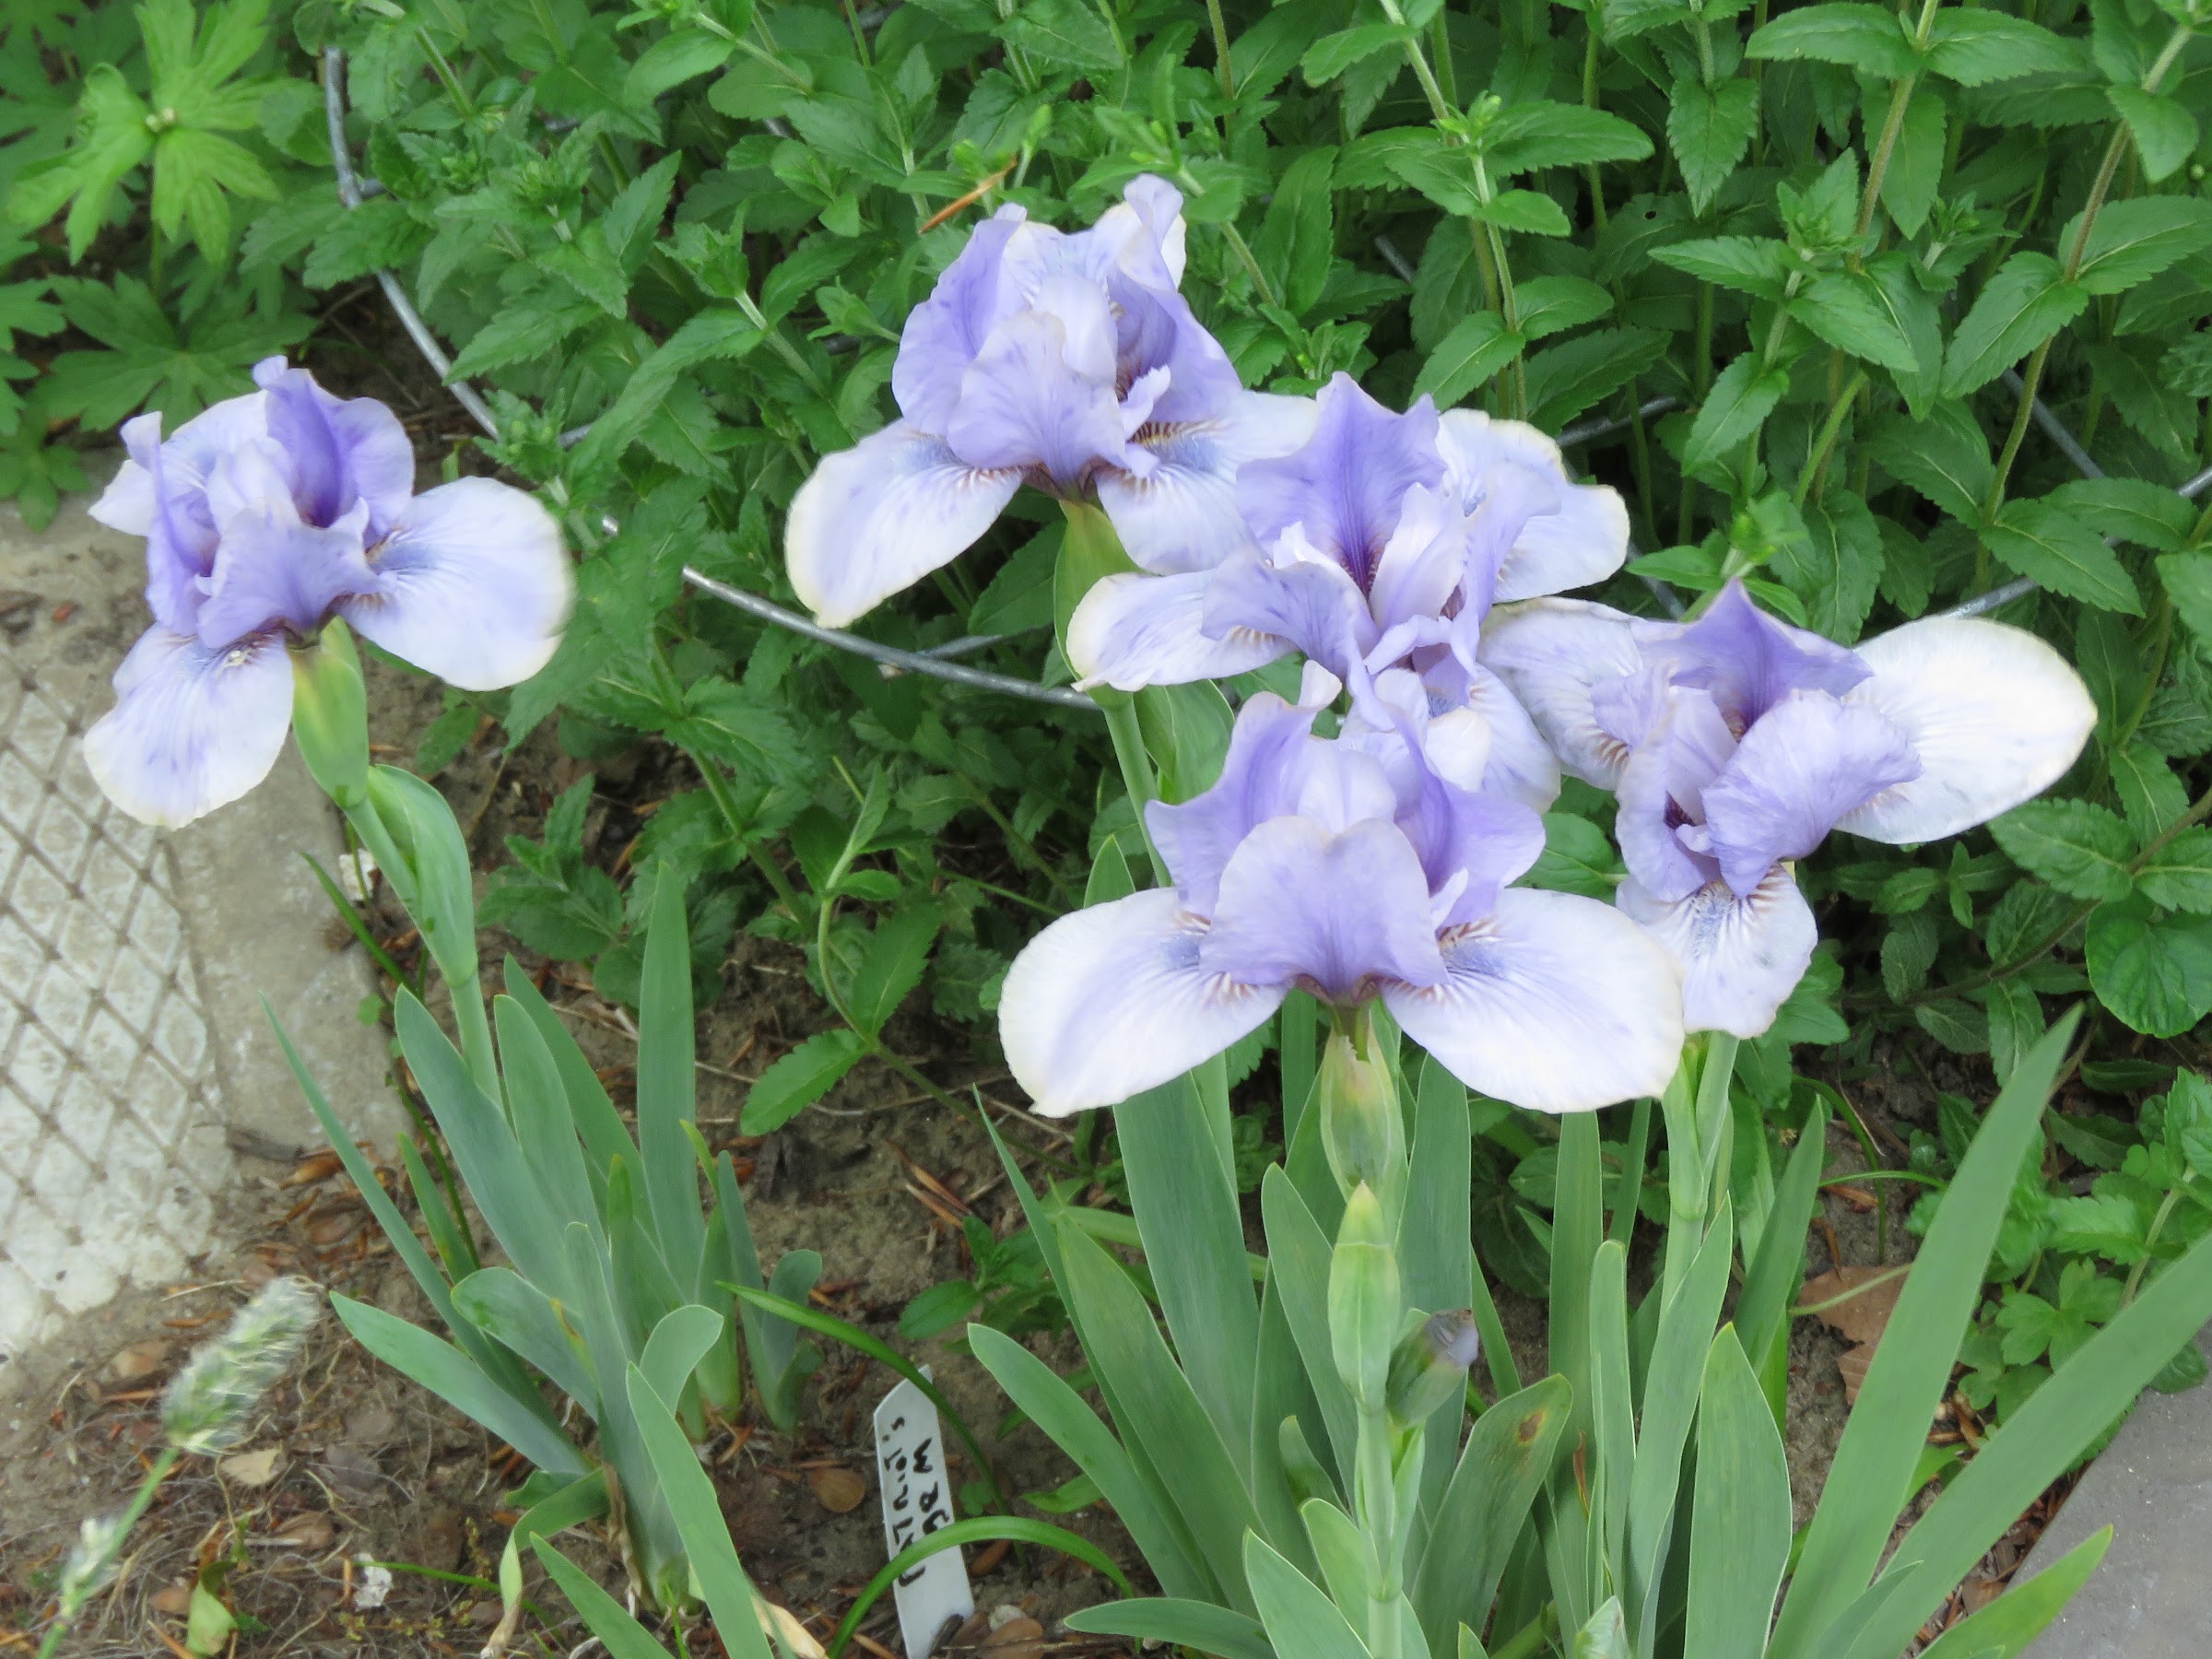 Iris d&rsquo;Allemagne, Iris barbu, Iris germanica 'Arilbred Patriot&rsquo;s gem'